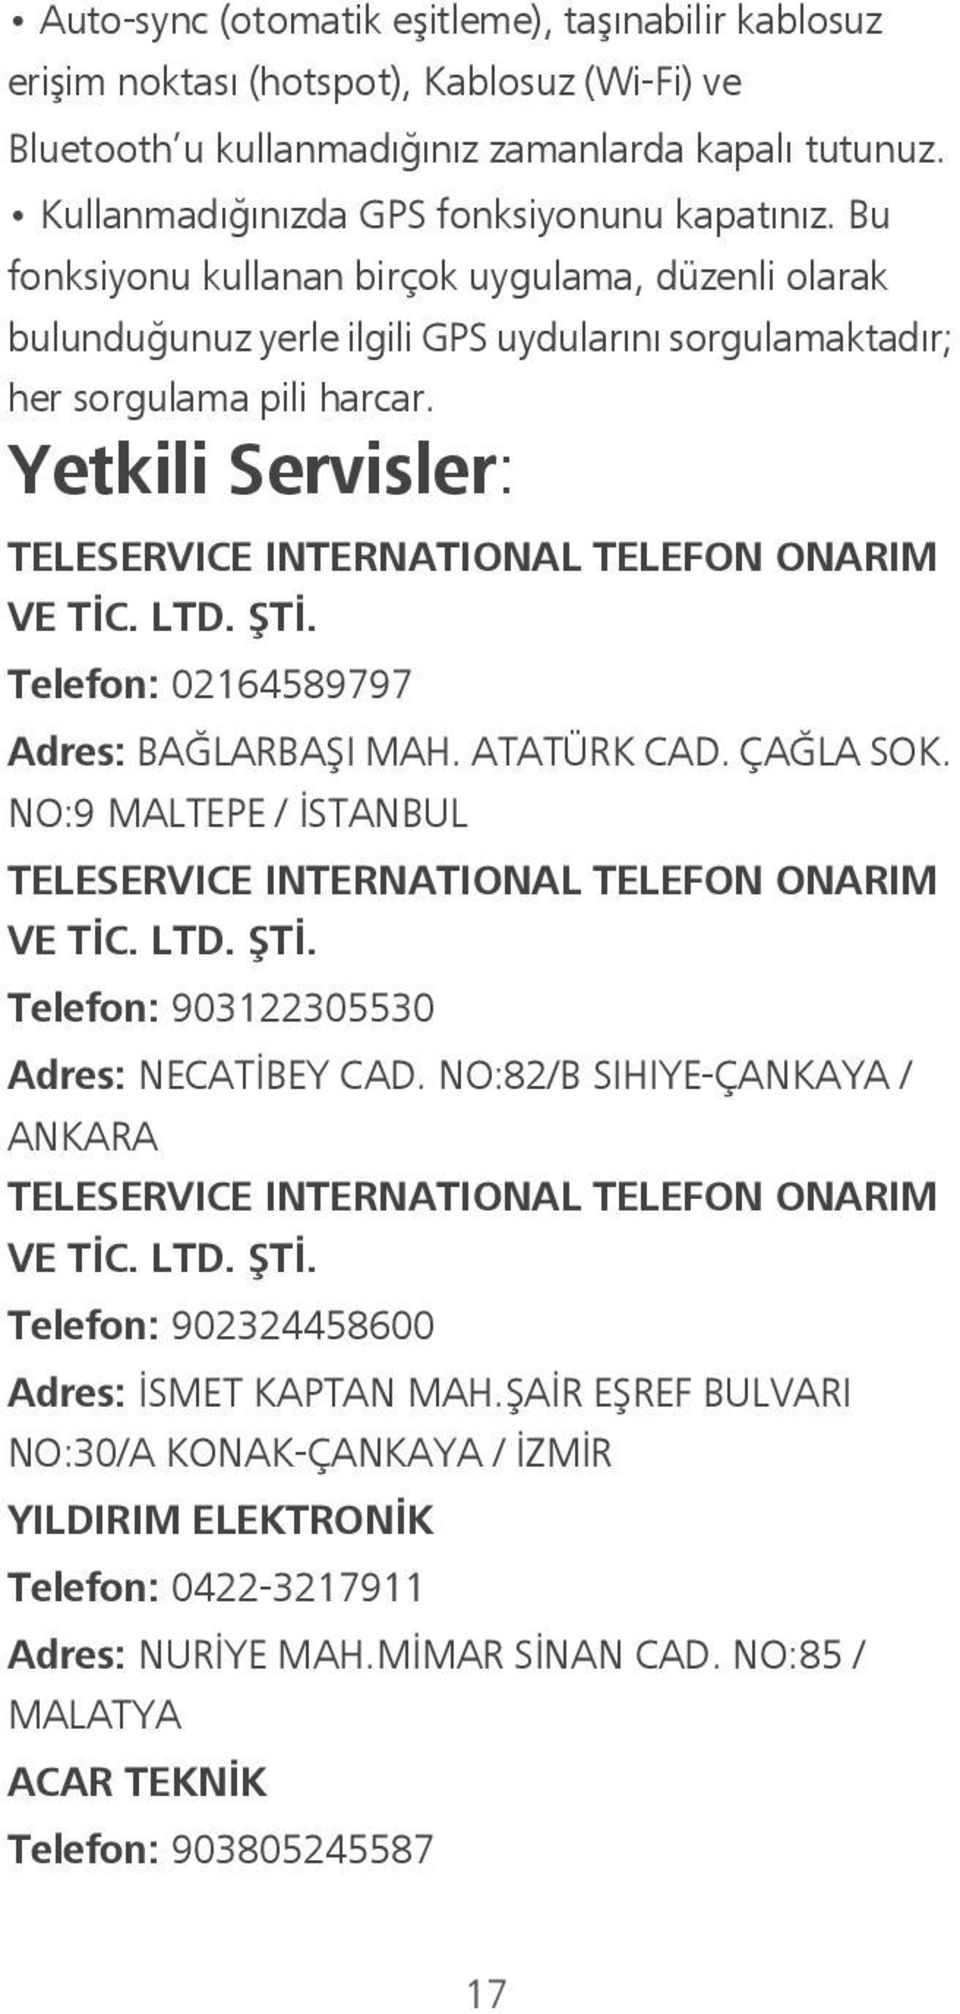 Yetkili Servisler: TELESERVICE INTERNATIONAL TELEFON ONARIM VE TİC. LTD. ŞTİ. Telefon: 02164589797 Adres: BAĞLARBAŞI MAH. ATATÜRK CAD. ÇAĞLA SOK.